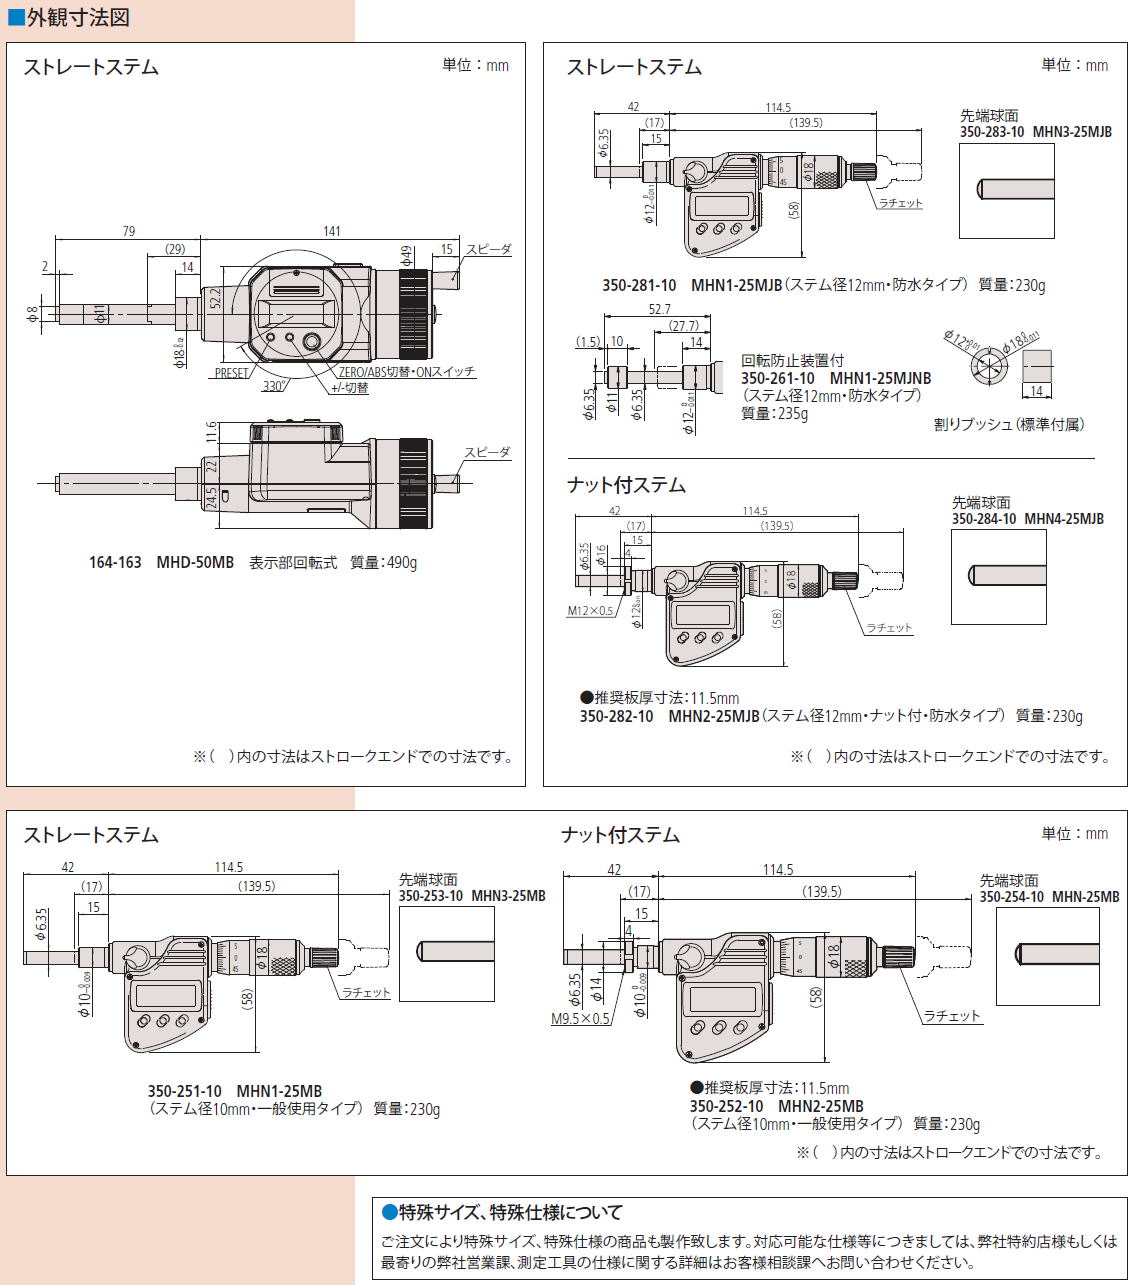 ミツトヨ マイクロメータヘッド 164・350シリーズ デジマチック